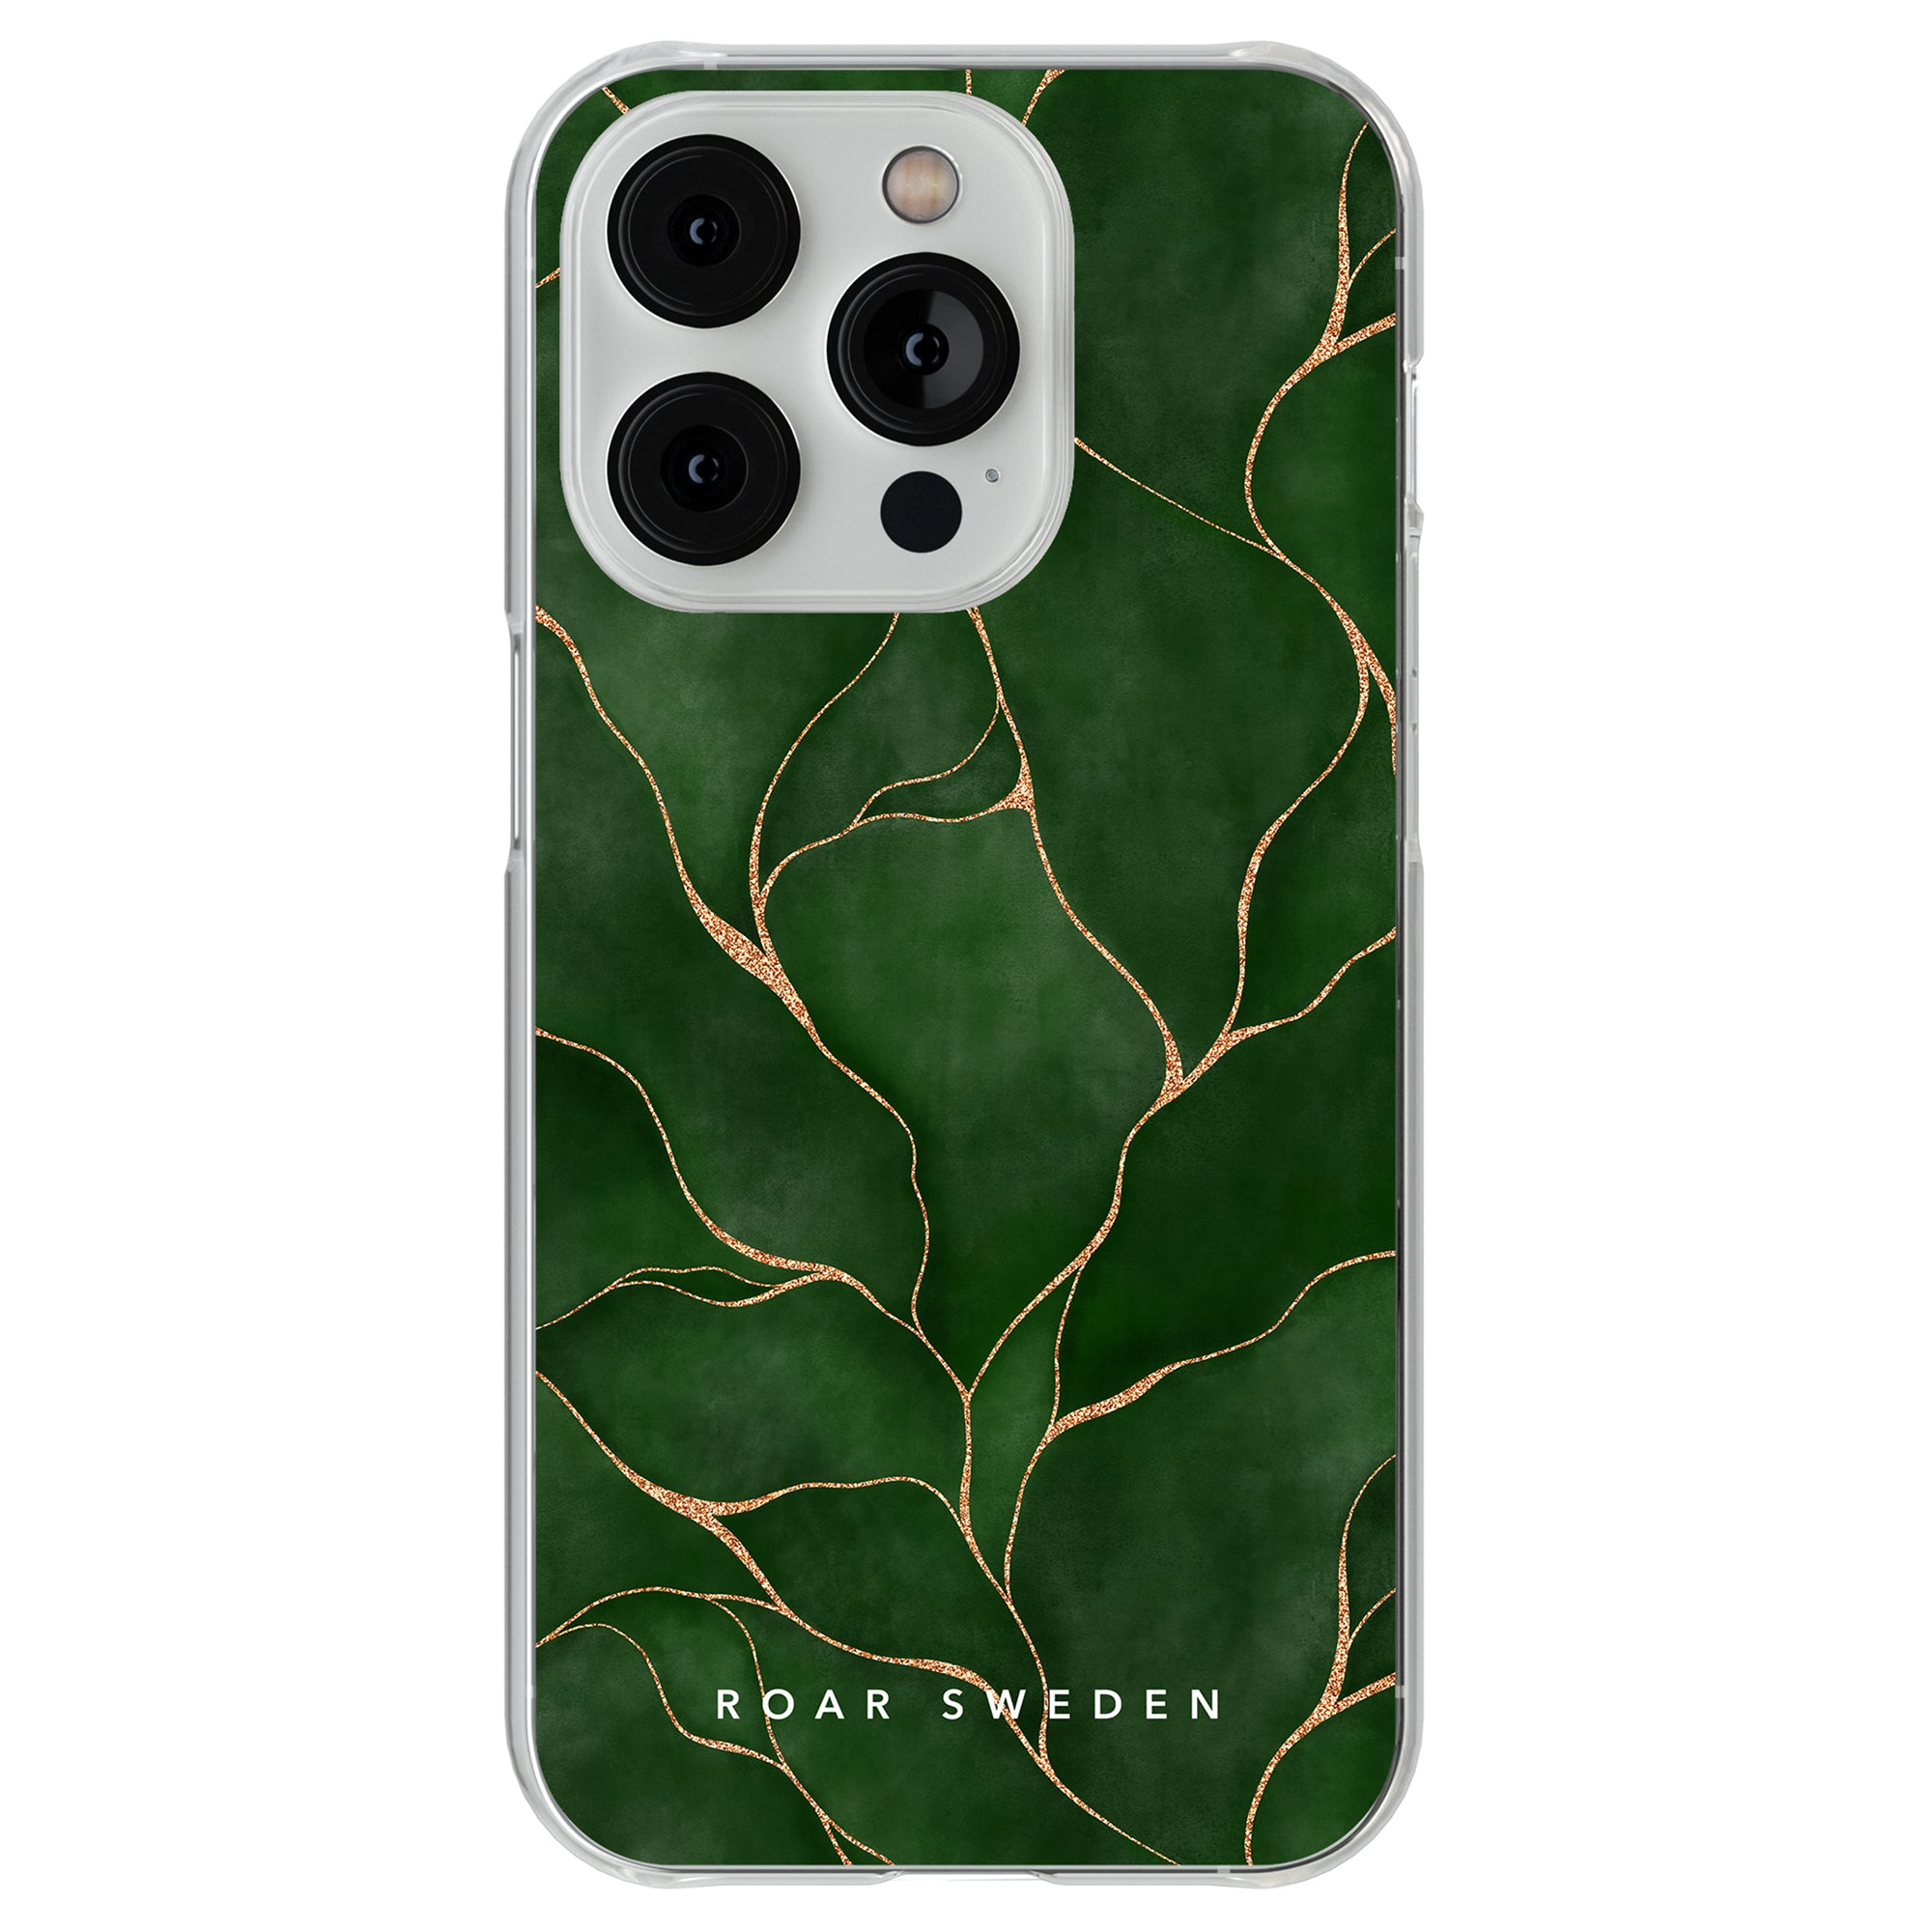 Ett genomskinligt telefonfodral prydt med bladguld, inspirerat av Livets träd och designat av Roar Sweden, kallat livets träd - Clear Case.